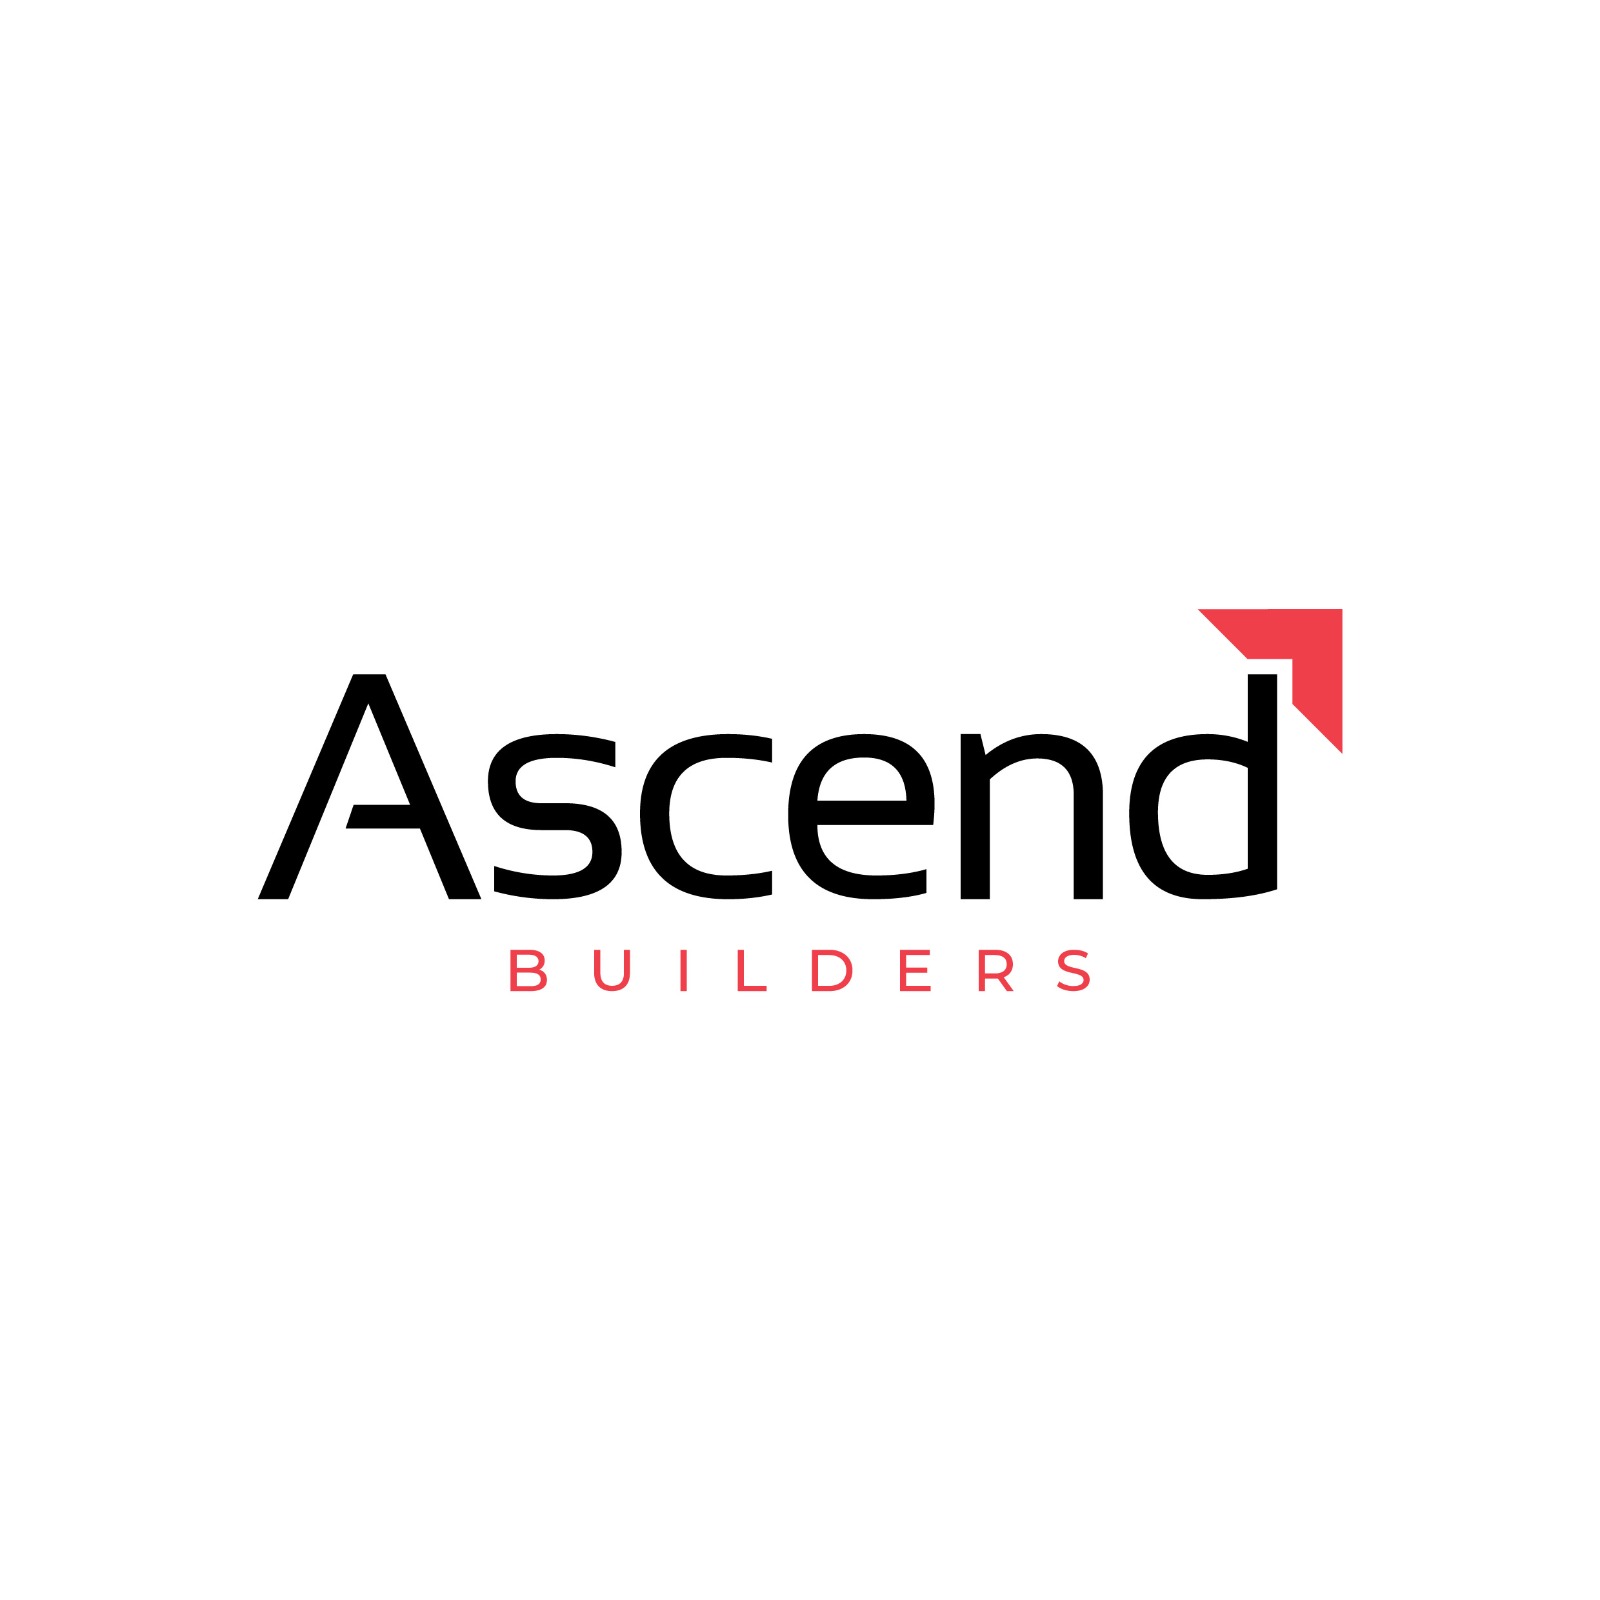 Ascend Builders|IT Services|Professional Services